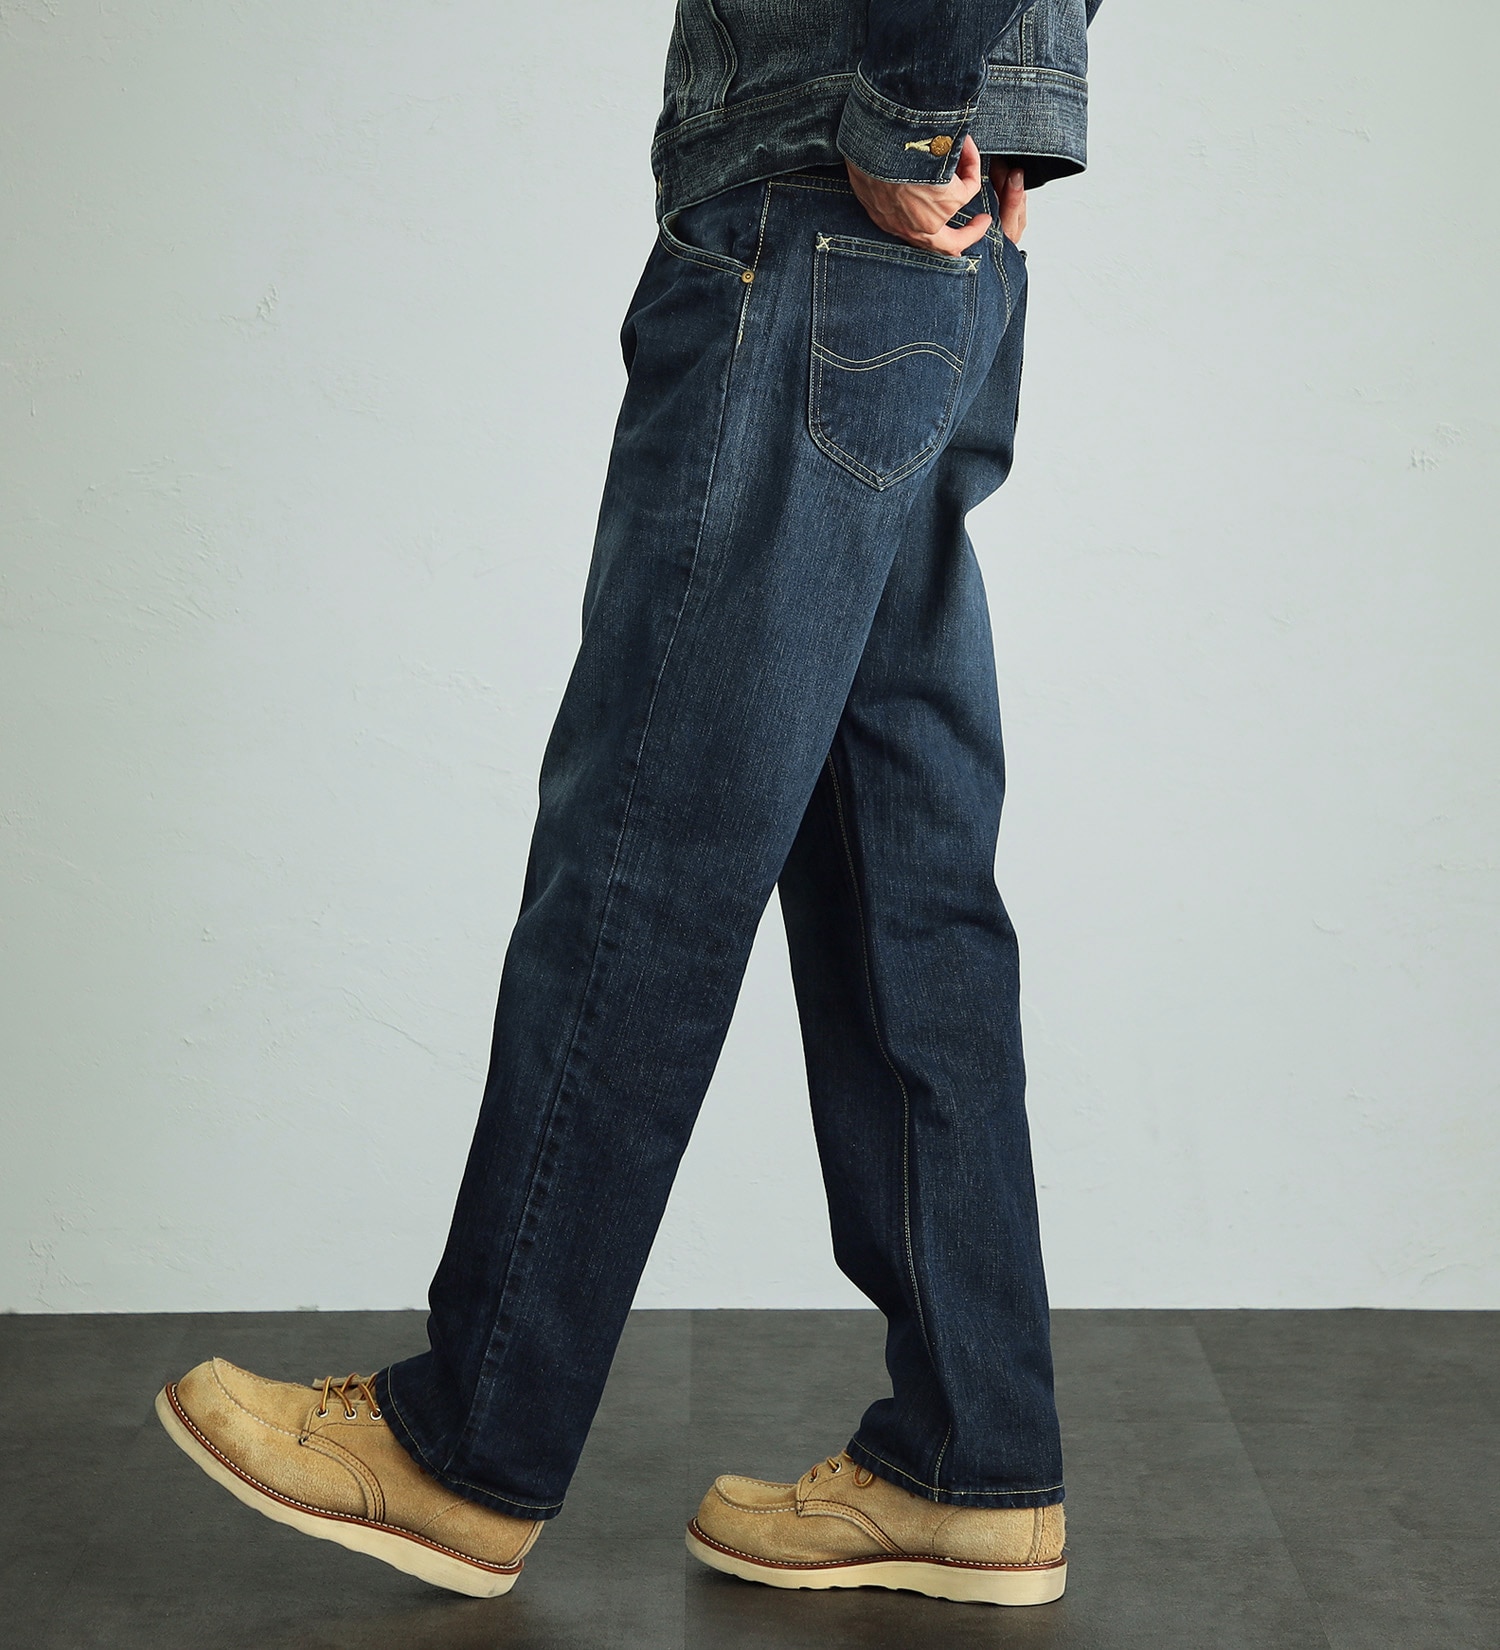 Lee(リー)の【股下長め(83cm)】AMERICAN RIDERS 200 フルカットジーンズ|パンツ/デニムパンツ/メンズ|濃色ブルー